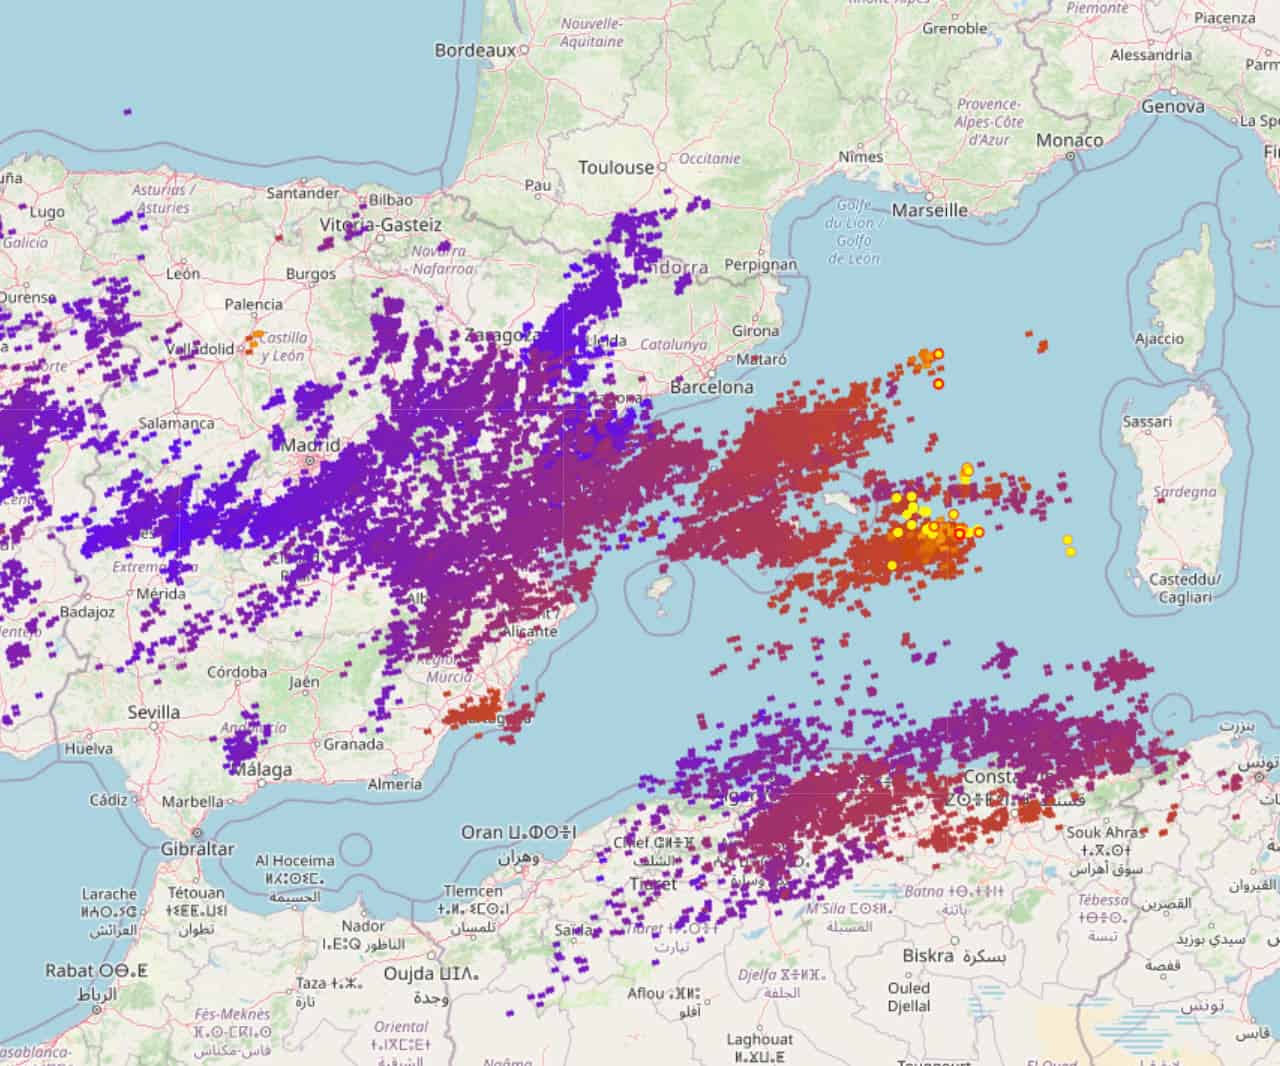 2021 09 02 12 06 21 - Meteo Sardegna, Temporali simil Tropicali. Mappe a confronto